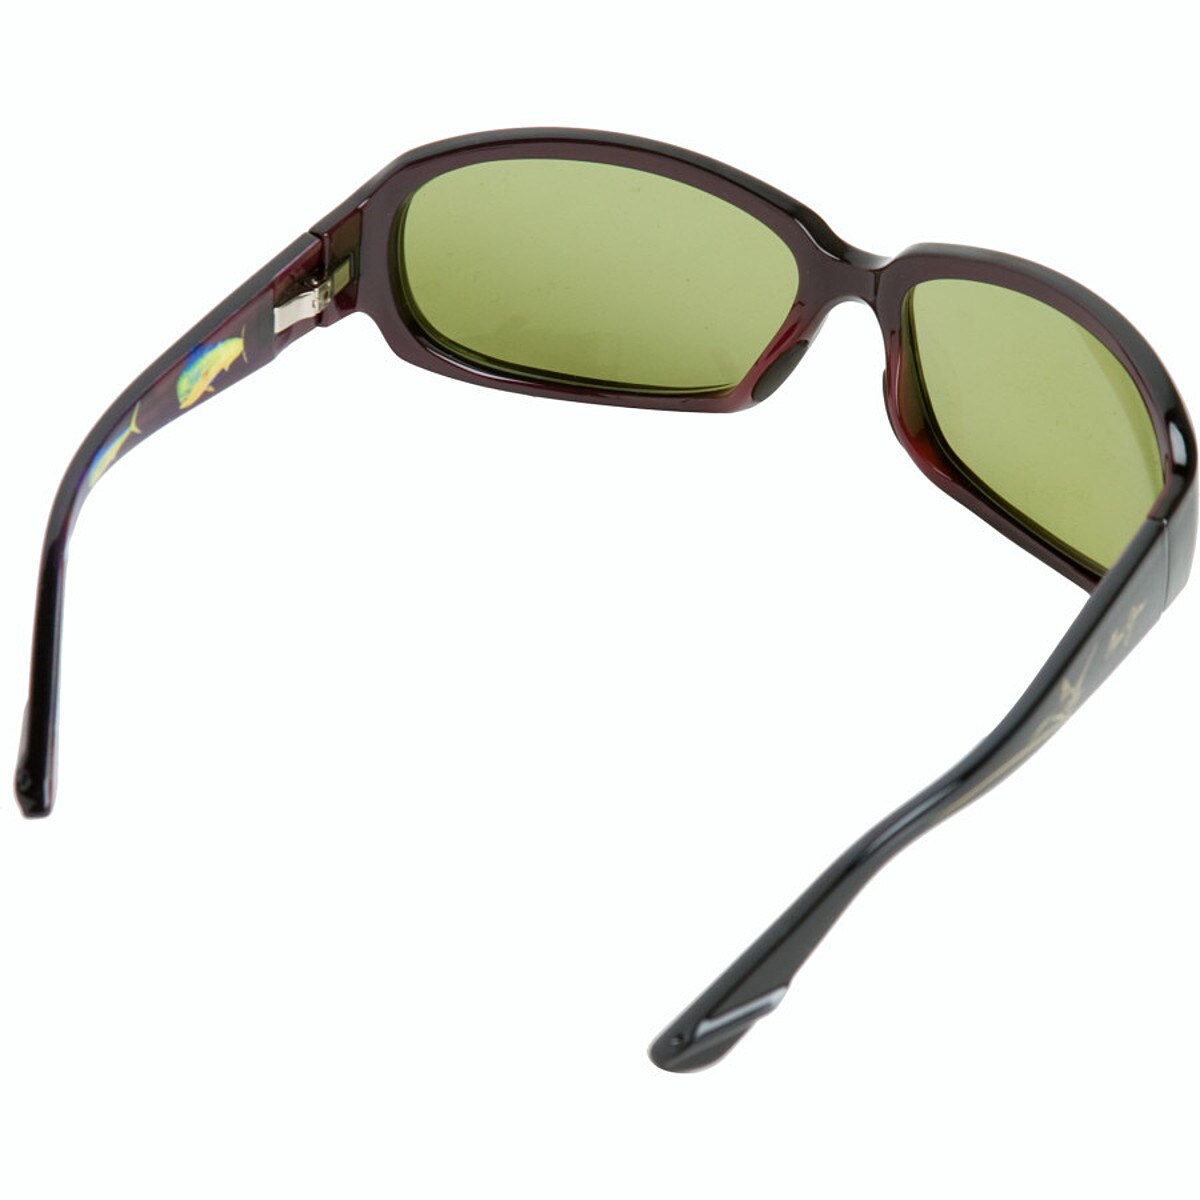 Maui Jim Mahi Mahi Sunglasses - Polarized - Accessories